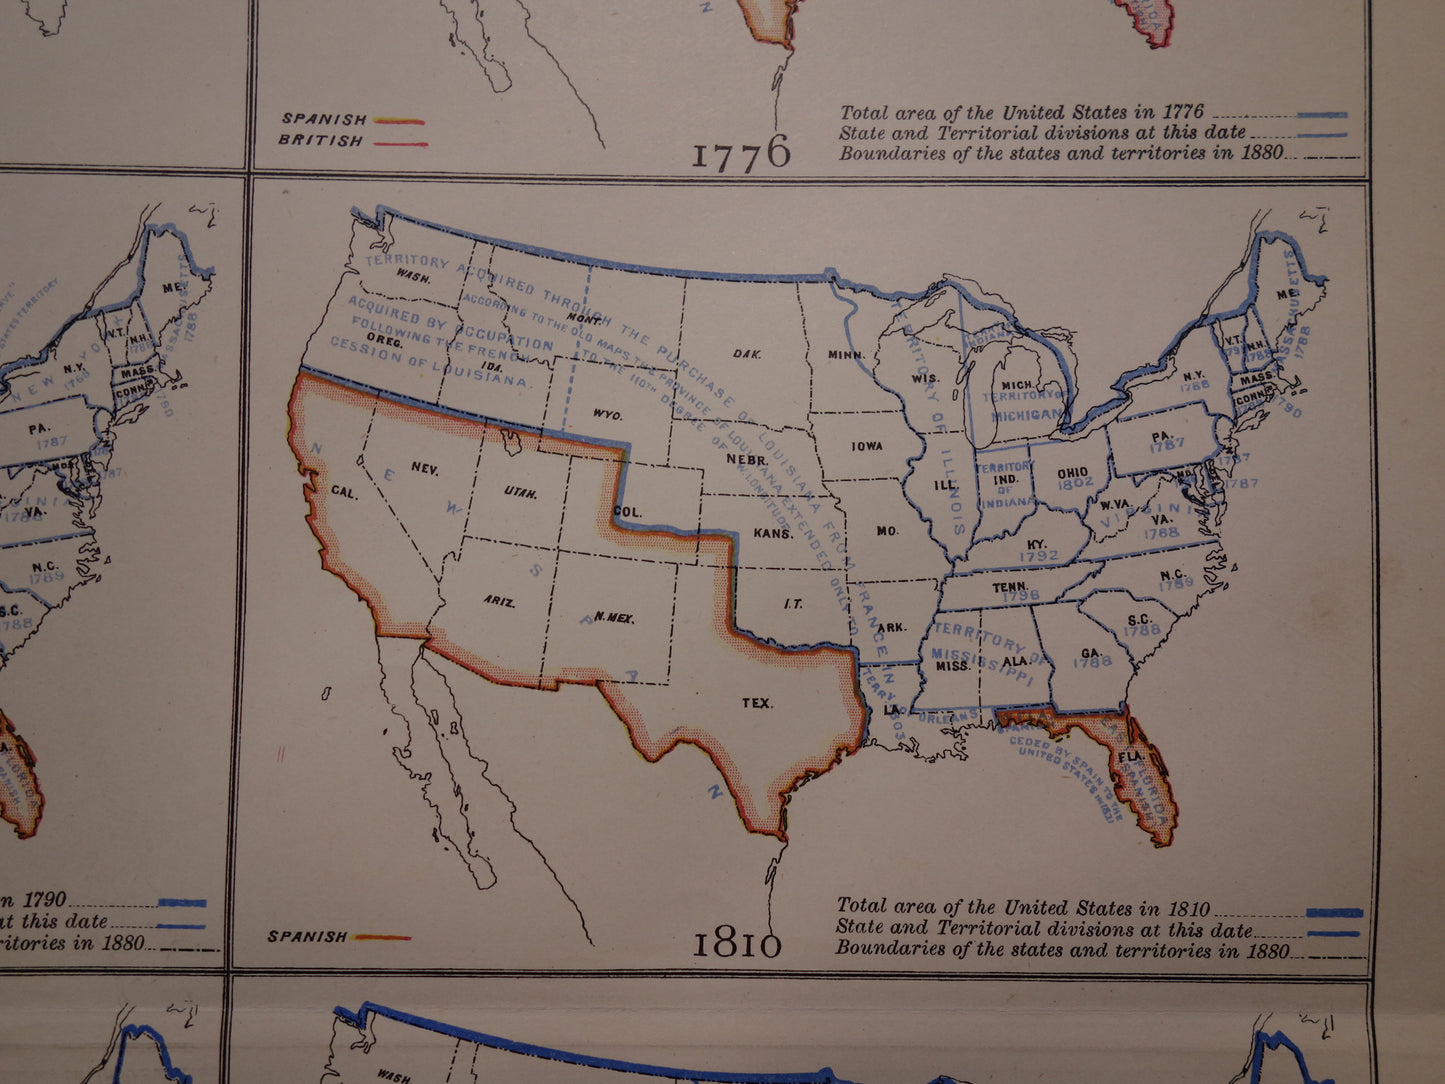 VERENIGDE STATEN Antieke kaarten over de ontstaansgeschiedenis van de VS 1888 originele oude geschiedenis print/poster ontstaan en uitbreiding VS tussen 1776 en 1860VS